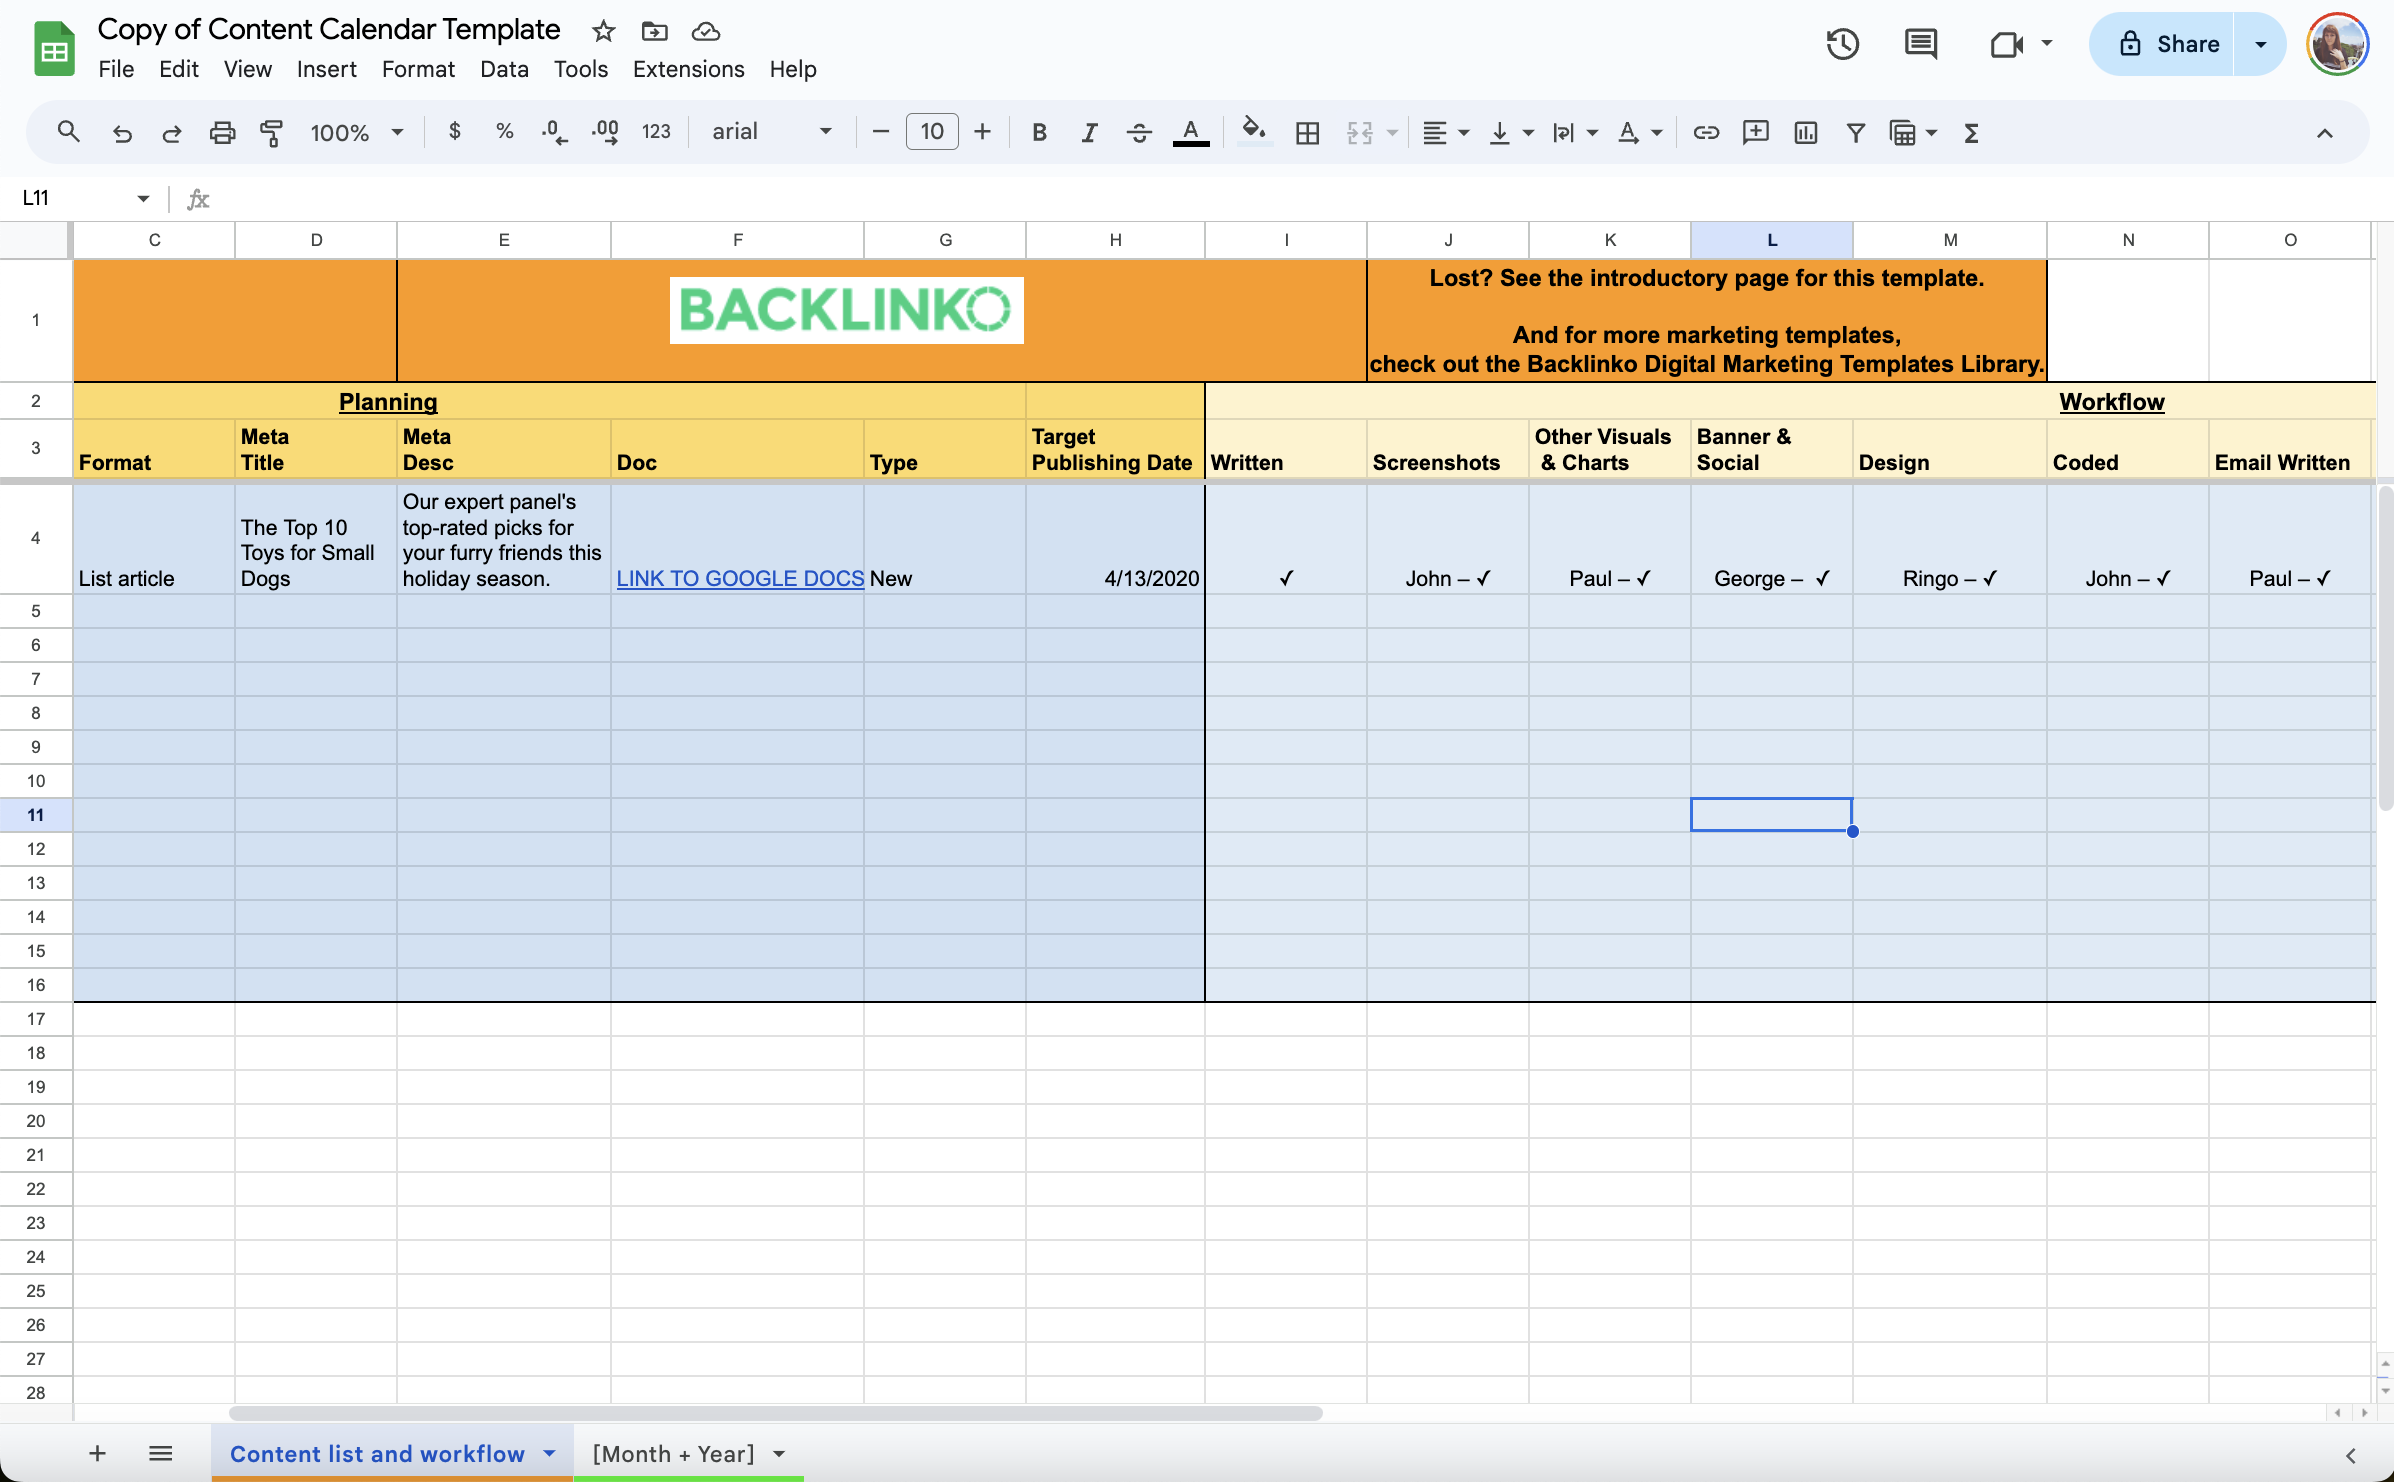 Une capture d'écran du modèle de calendrier de contenu de Backlinko avec des colonnes pour la date, le format, le titre, le message principal, les tâches, le propriétaire, la bannière, le design. 